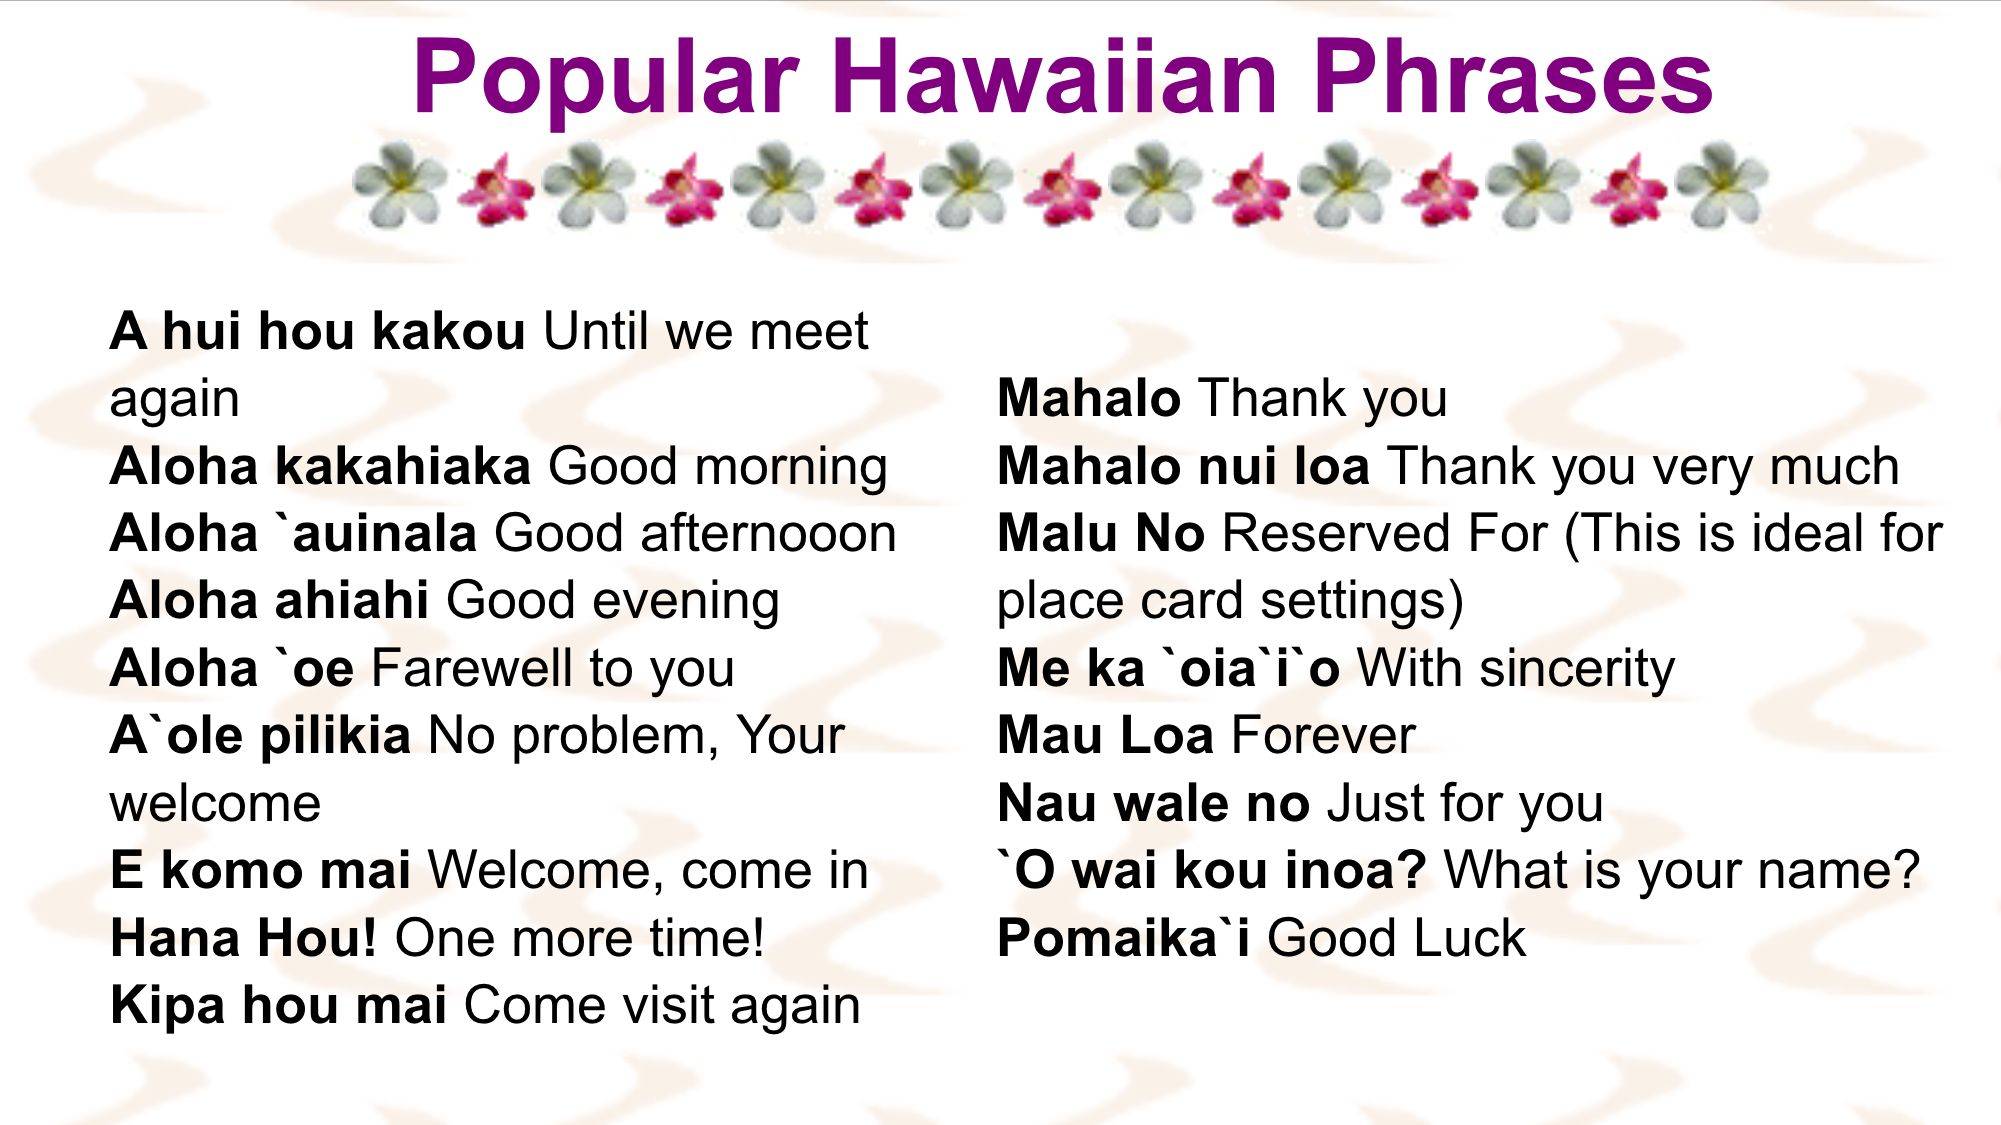 Гавайский язык